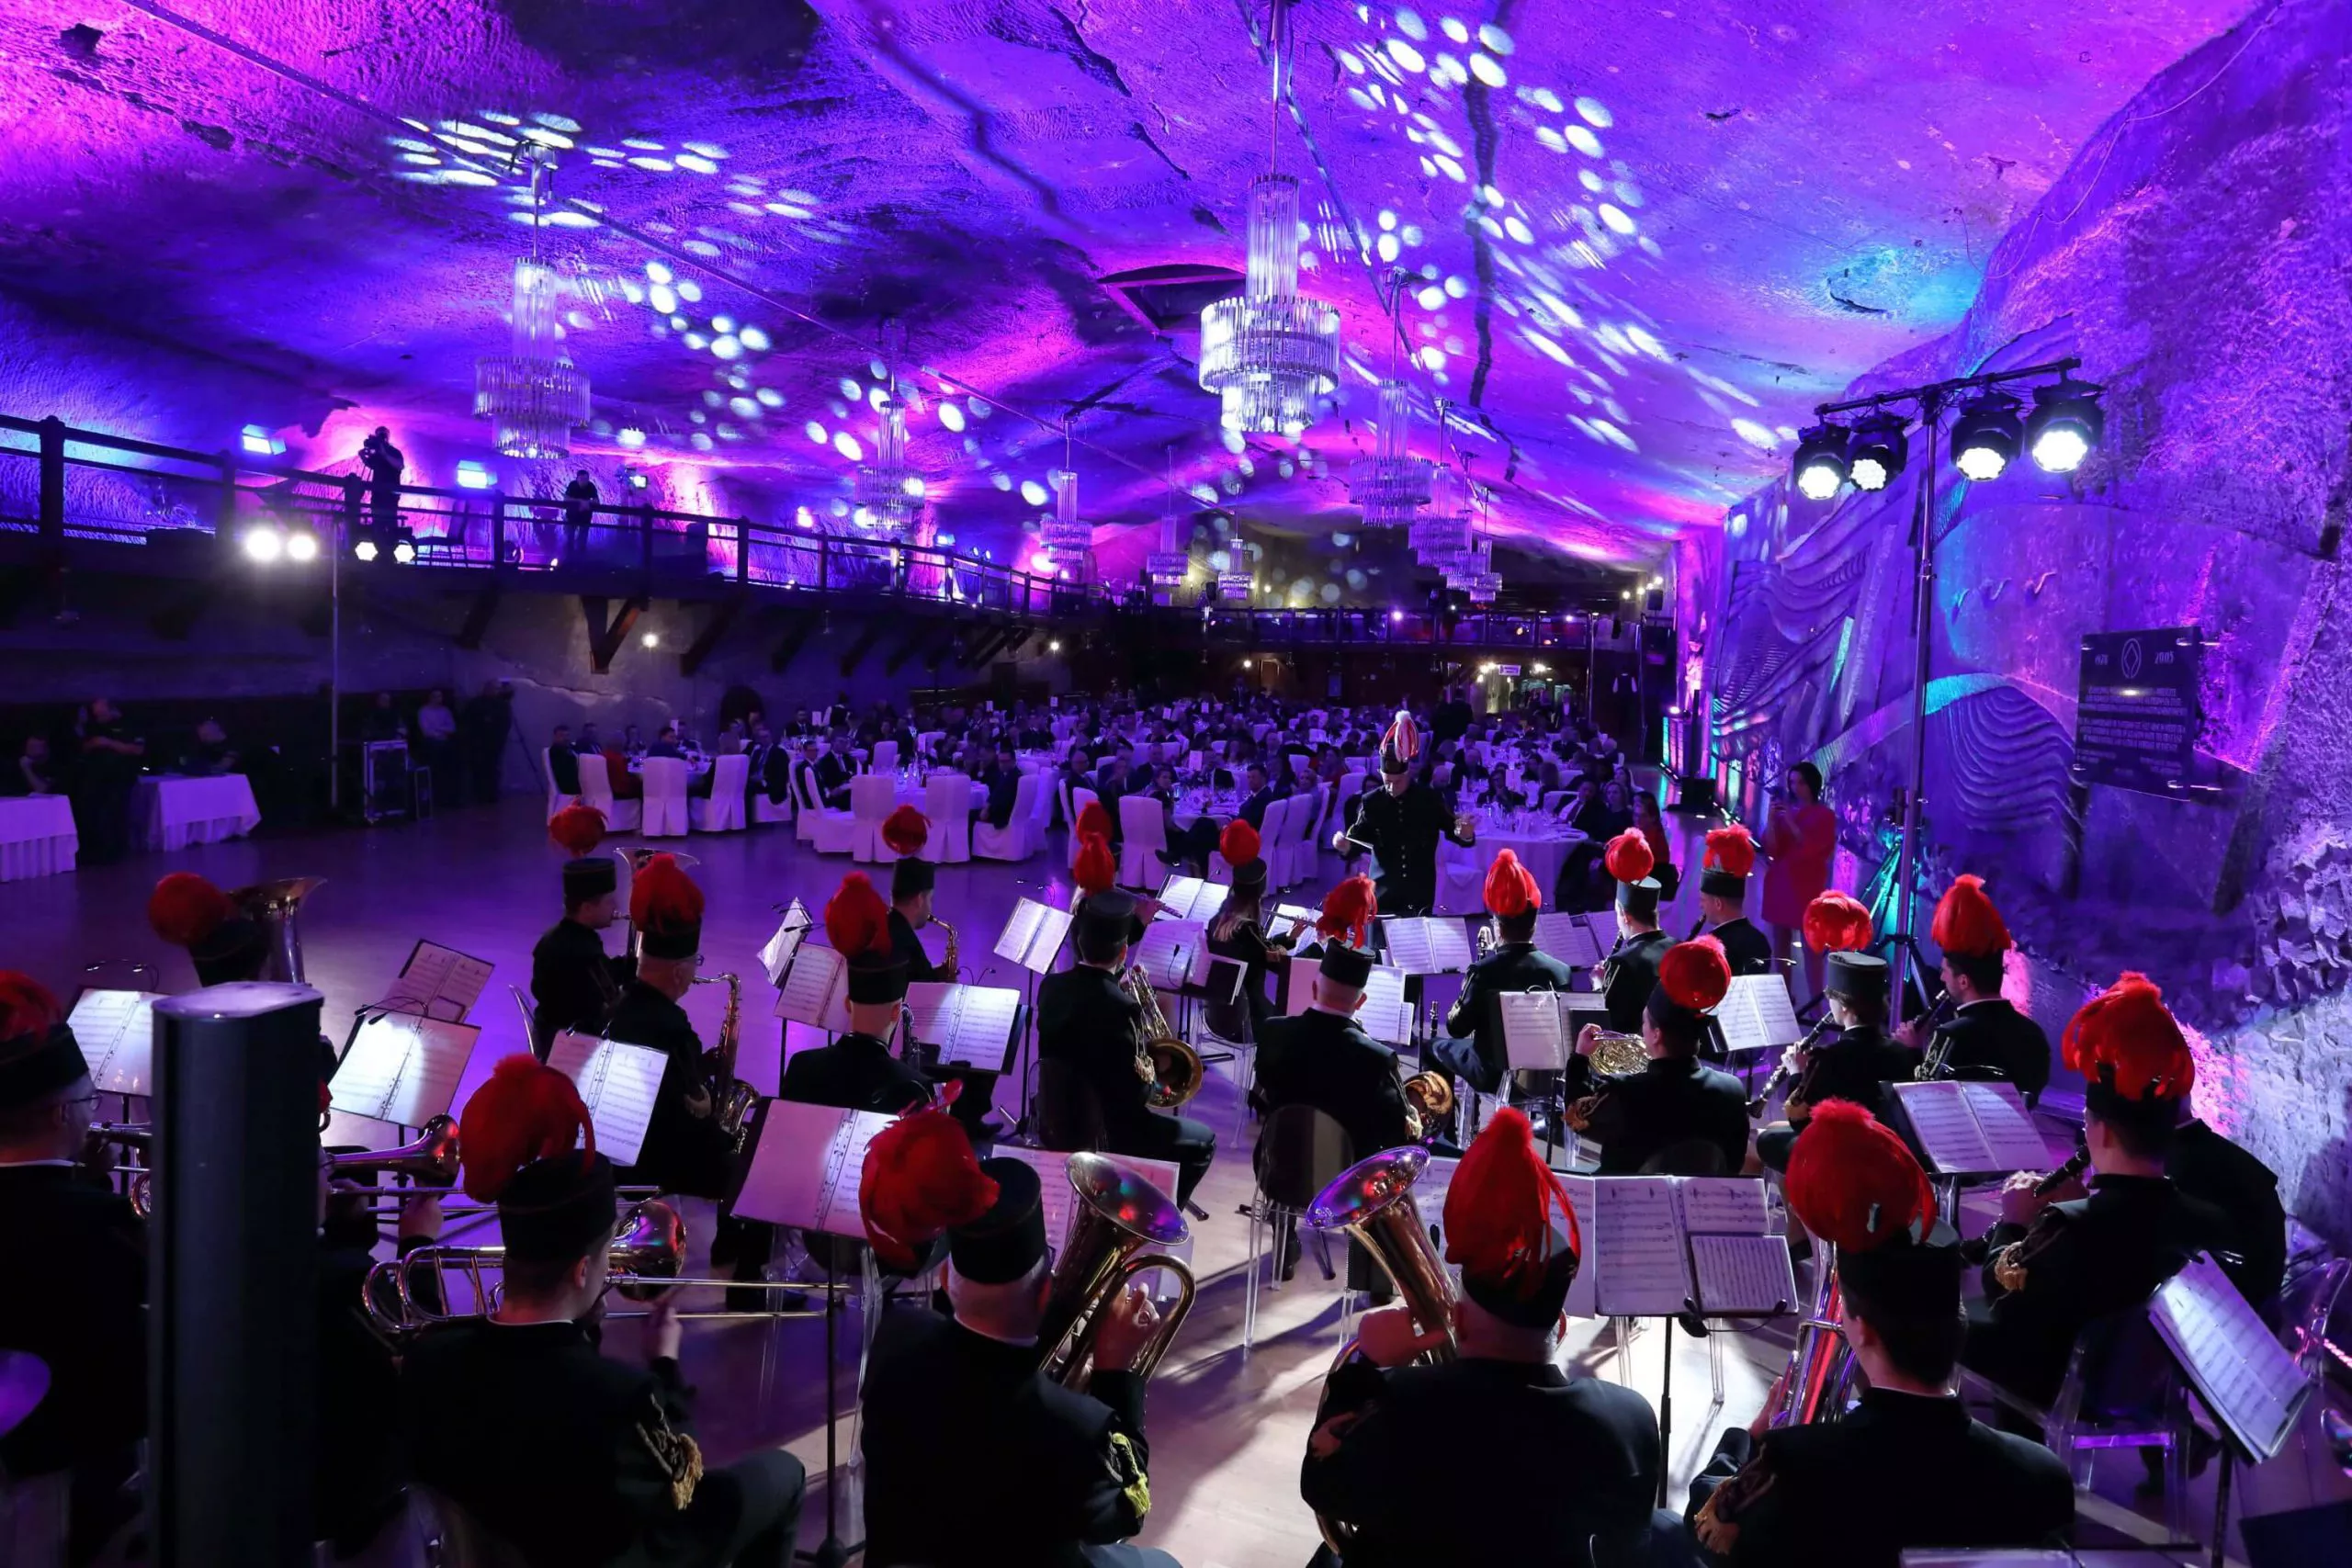 Das Foto zeigt das Innere der unterirdischen Kammer während eines Banketts. Im Vordergrund sieht man ein Orchester in traditioneller Bergmannstracht, das gerade ein Konzert spielt. Im Hintergrund stehen runde Tische, an denen die Gäste Platz nehmen.